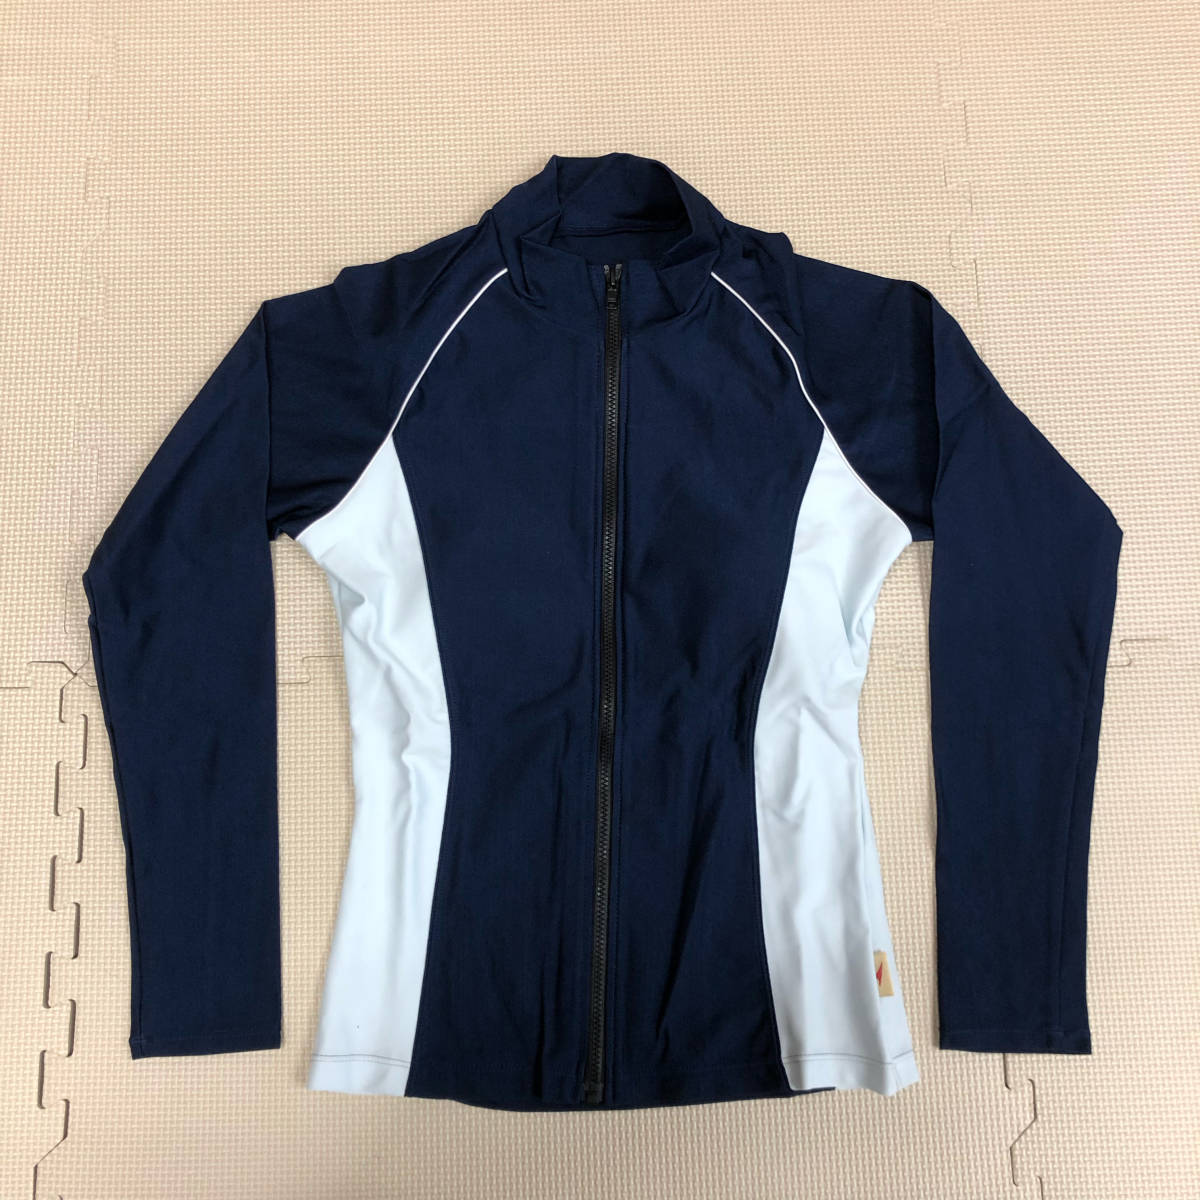 ( новый товар ) купальный костюм [SW-065A-901]A темно-синий ×si- белый / плавание рубашка / накладка есть /REDSWALOW/ сделано в Японии /.. купальный костюм / купальный костюм / плавание ../